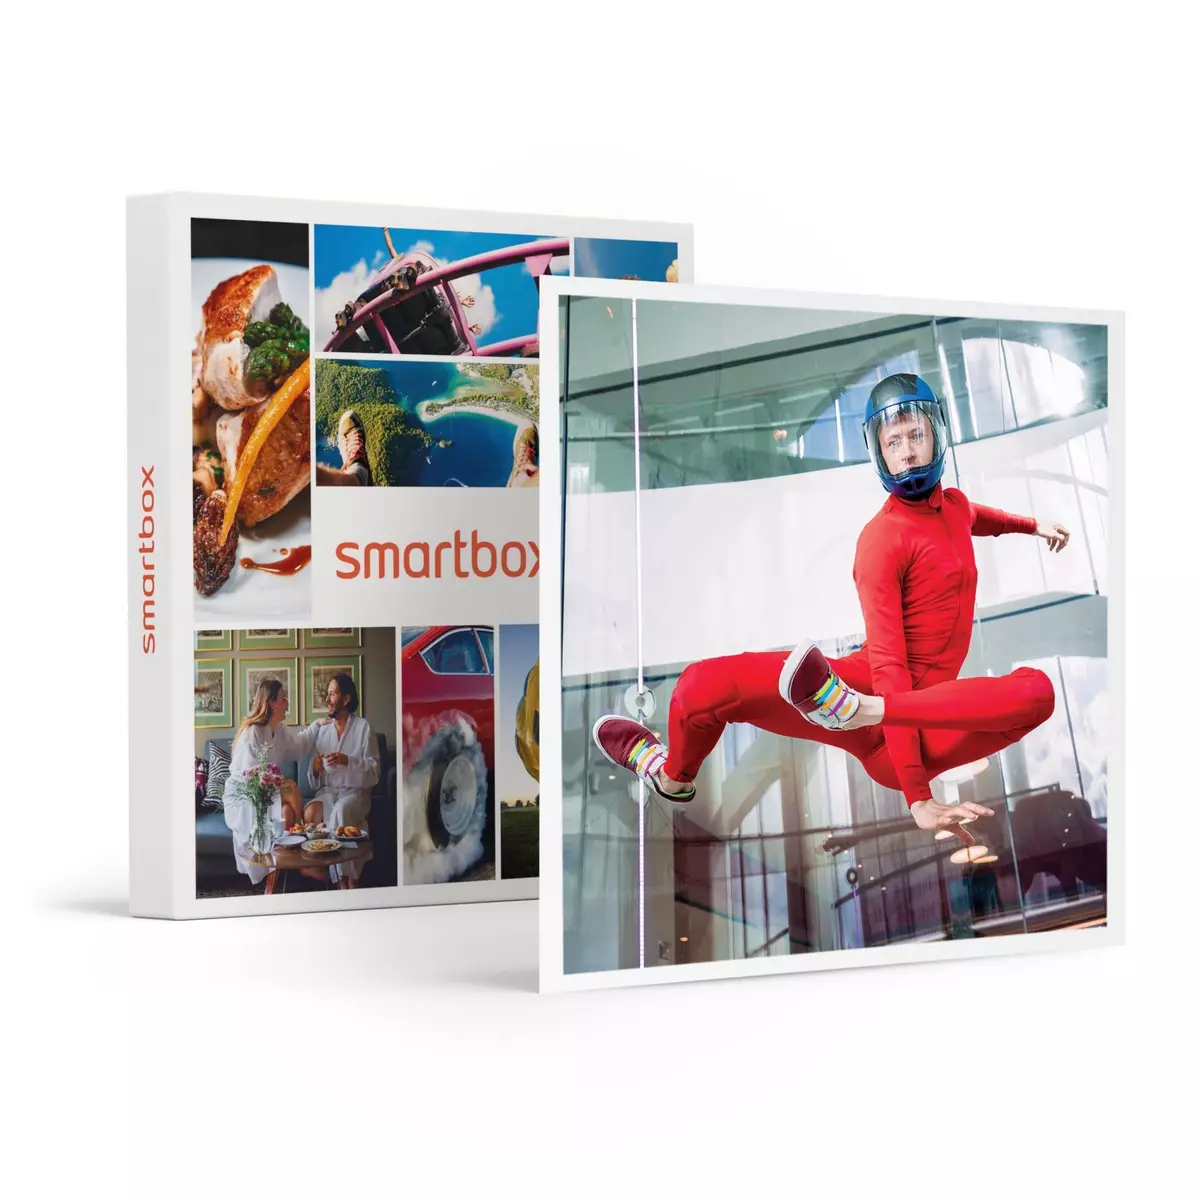 Smartbox Simulation de chute libre pour 2 à Montpellier - Coffret Cadeau Sport & Aventure